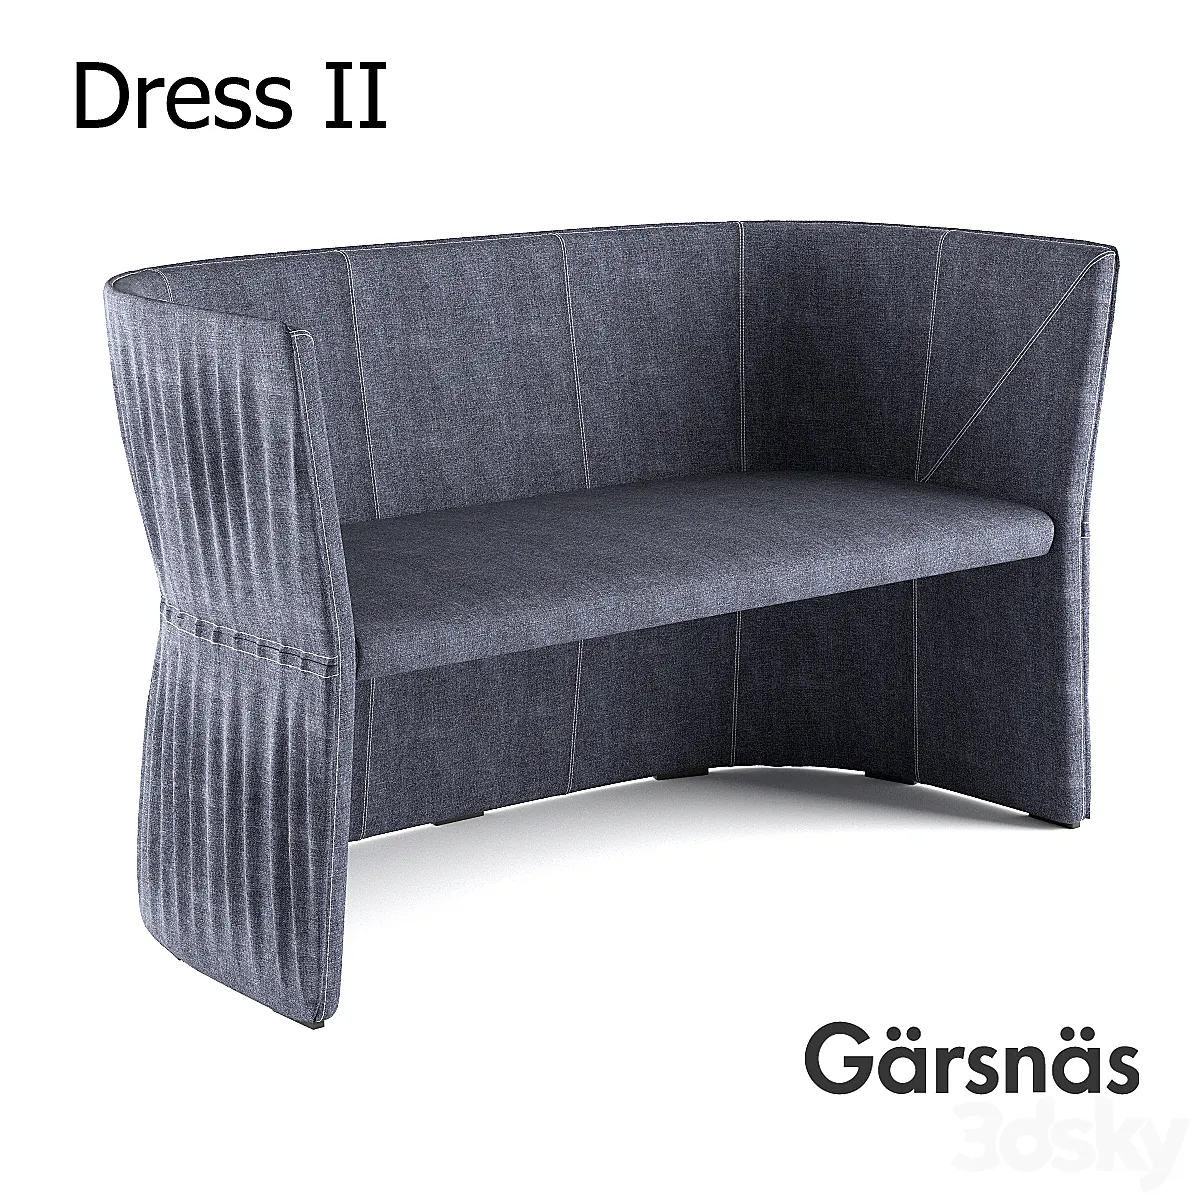 Dress 2 Garsnas - Sofa - 3D model